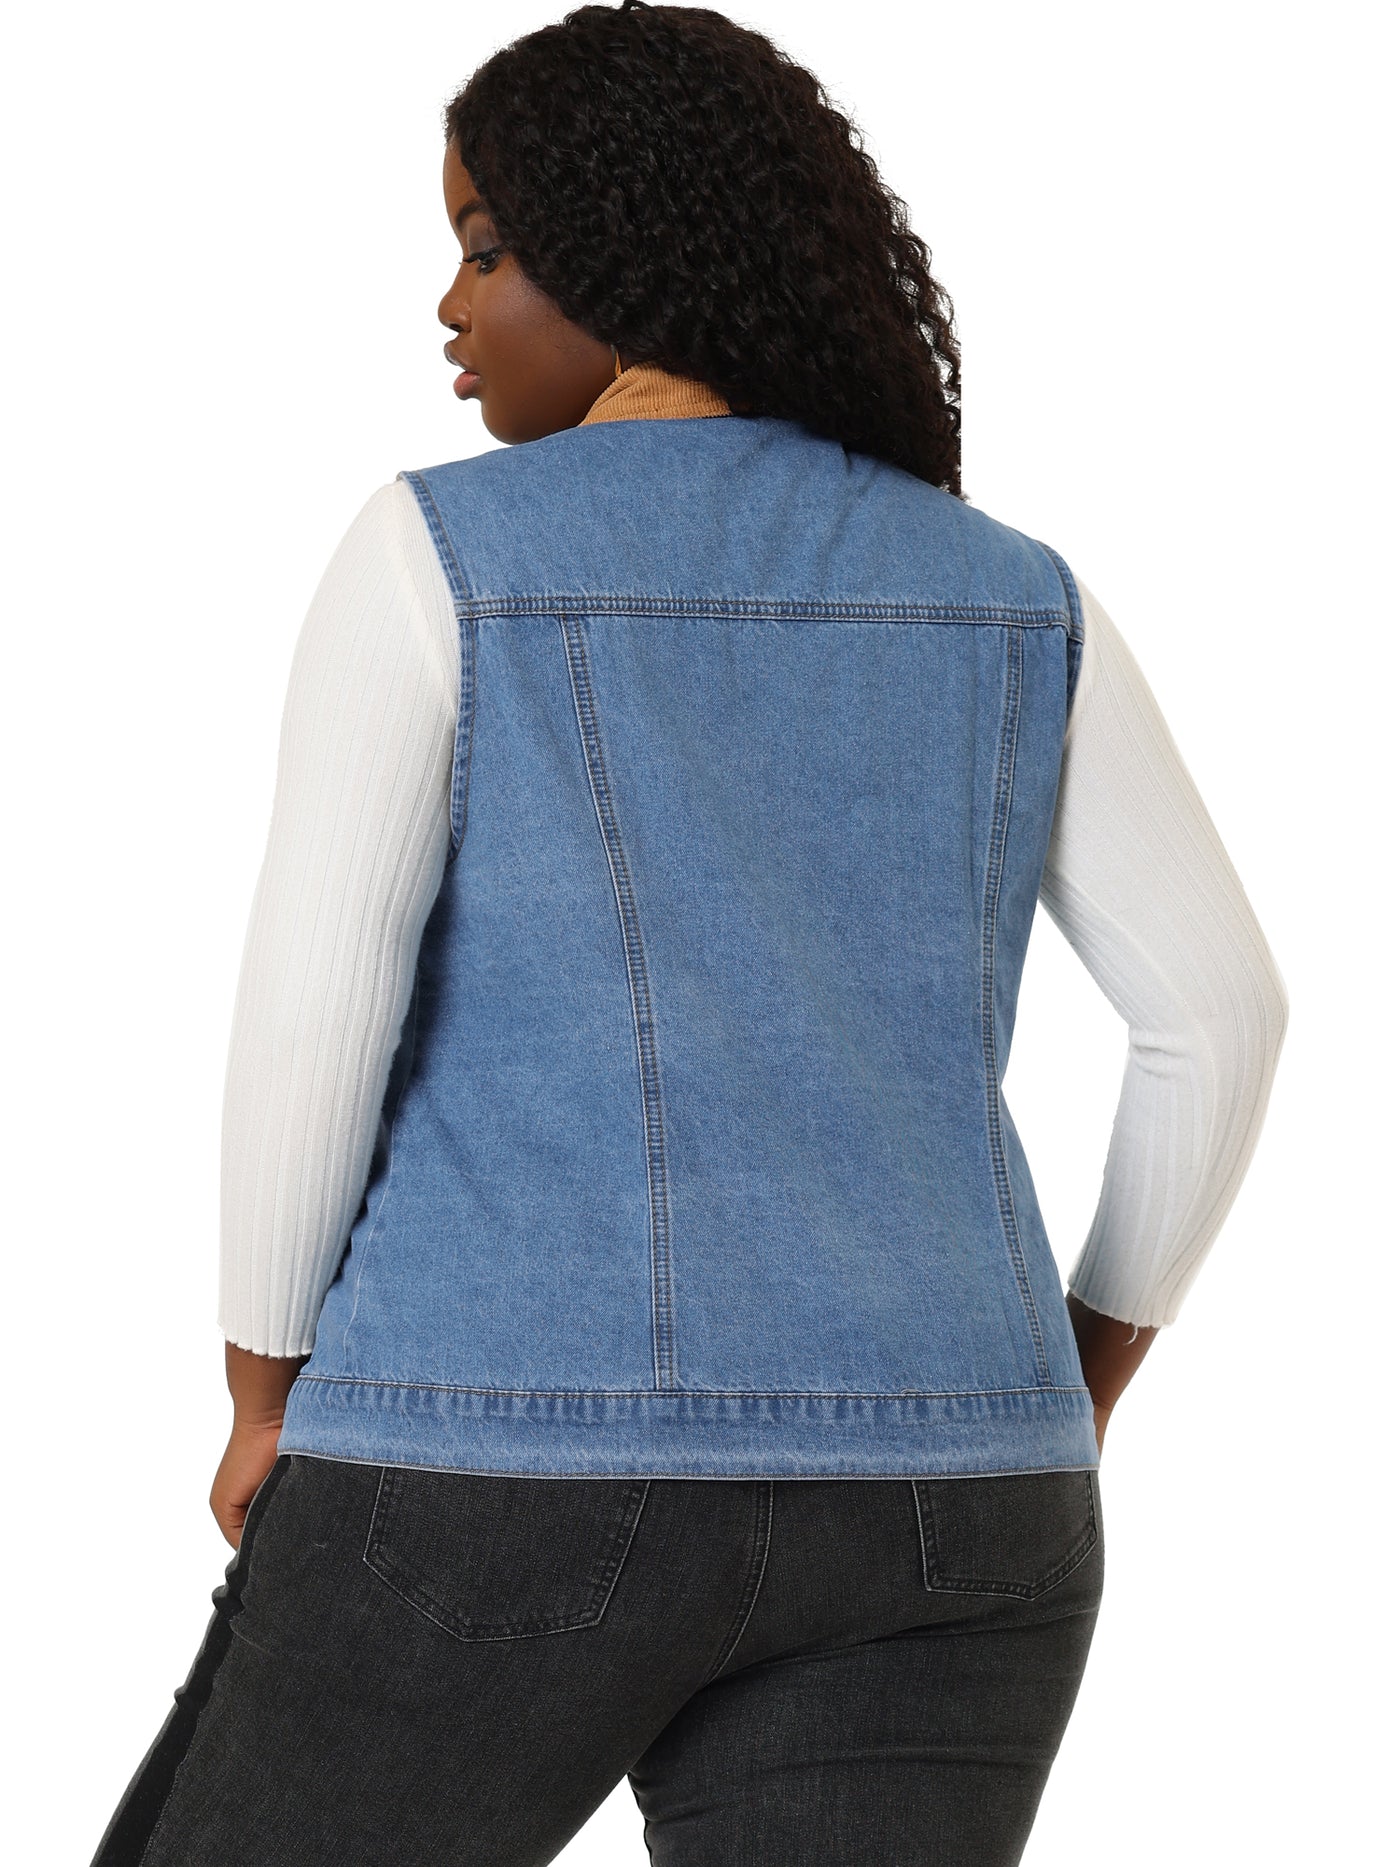 Bublédon Plus Size Corduroy Jean Contrast Color Denim Jackets Vests